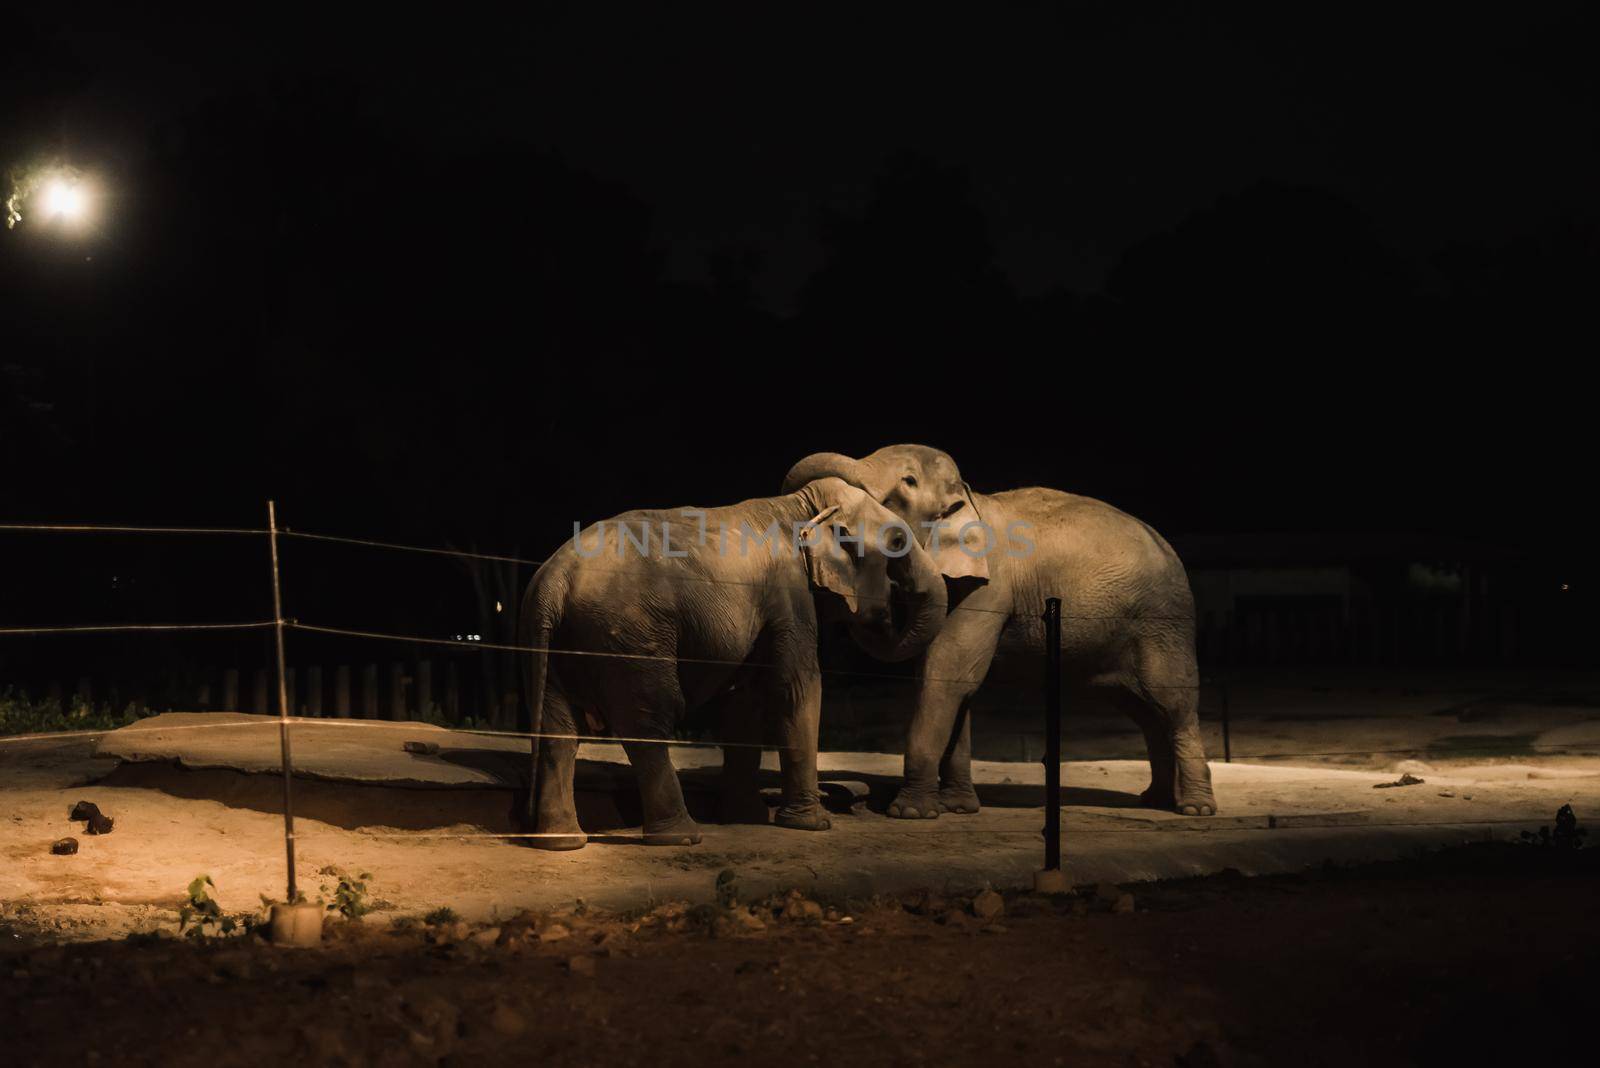 Elephant at zoo night